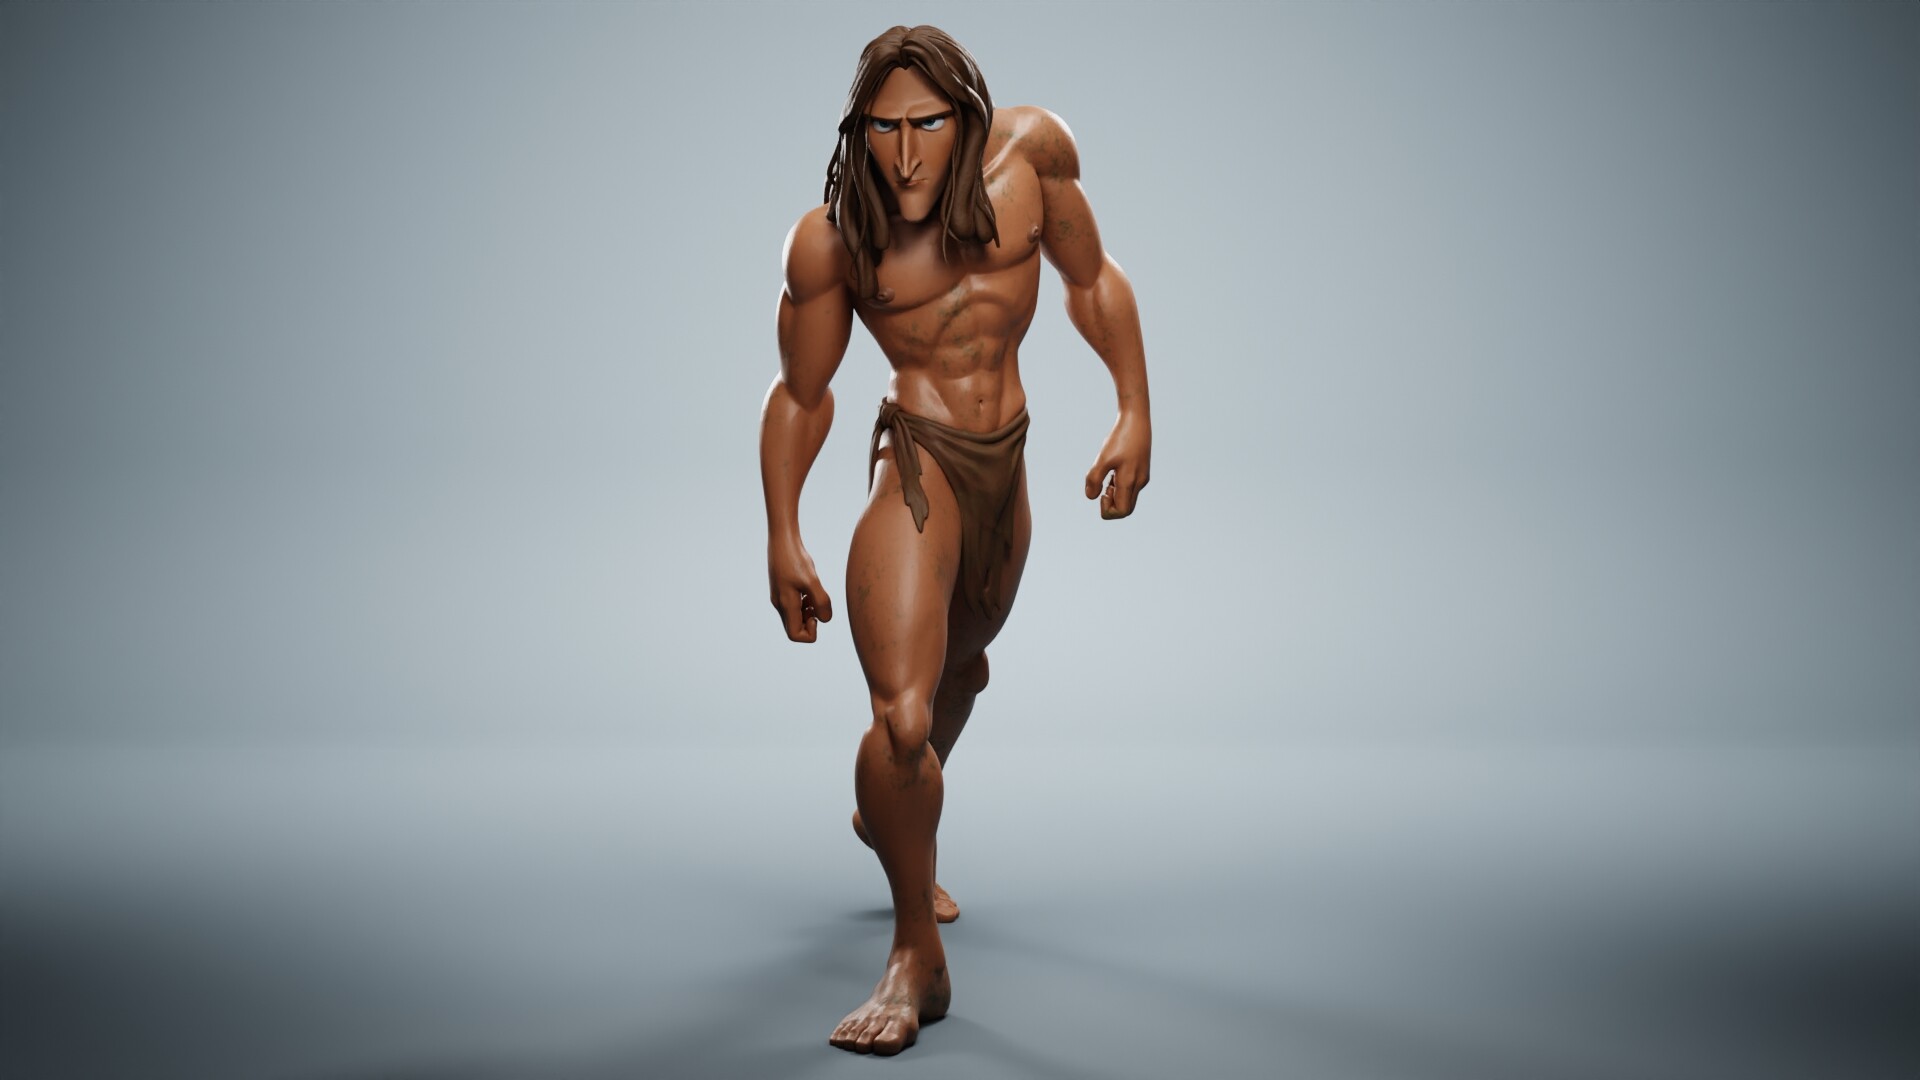 Tarzan - Definitve T Pose